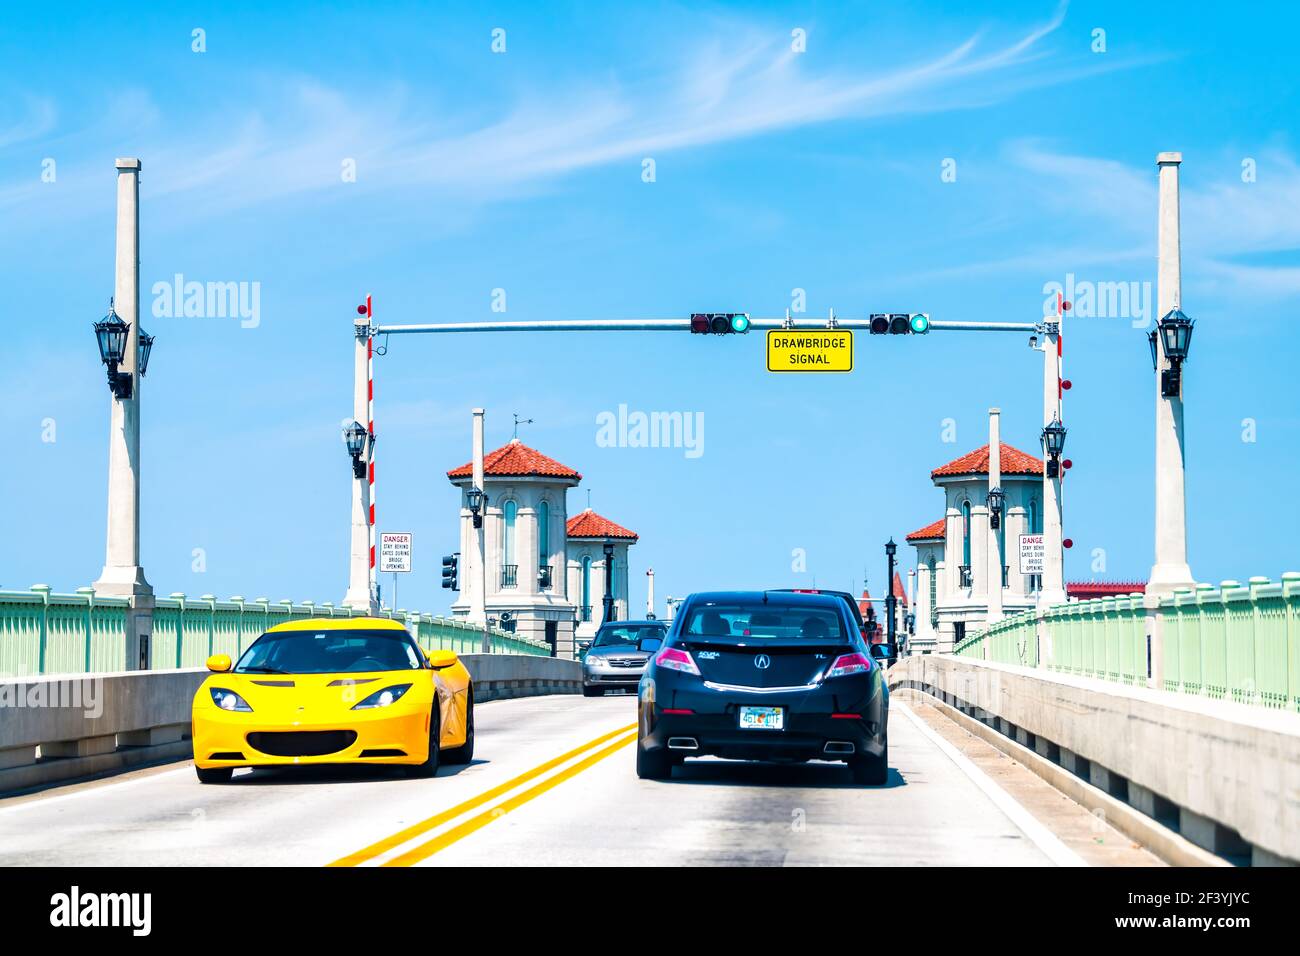 St. Augustine, EE.UU. - 10 de mayo de 2018: Puente de tiro de los Leones bascule, Florida en la vía fluvial intracostera de la isla Anastasia en verano con el traf Foto de stock